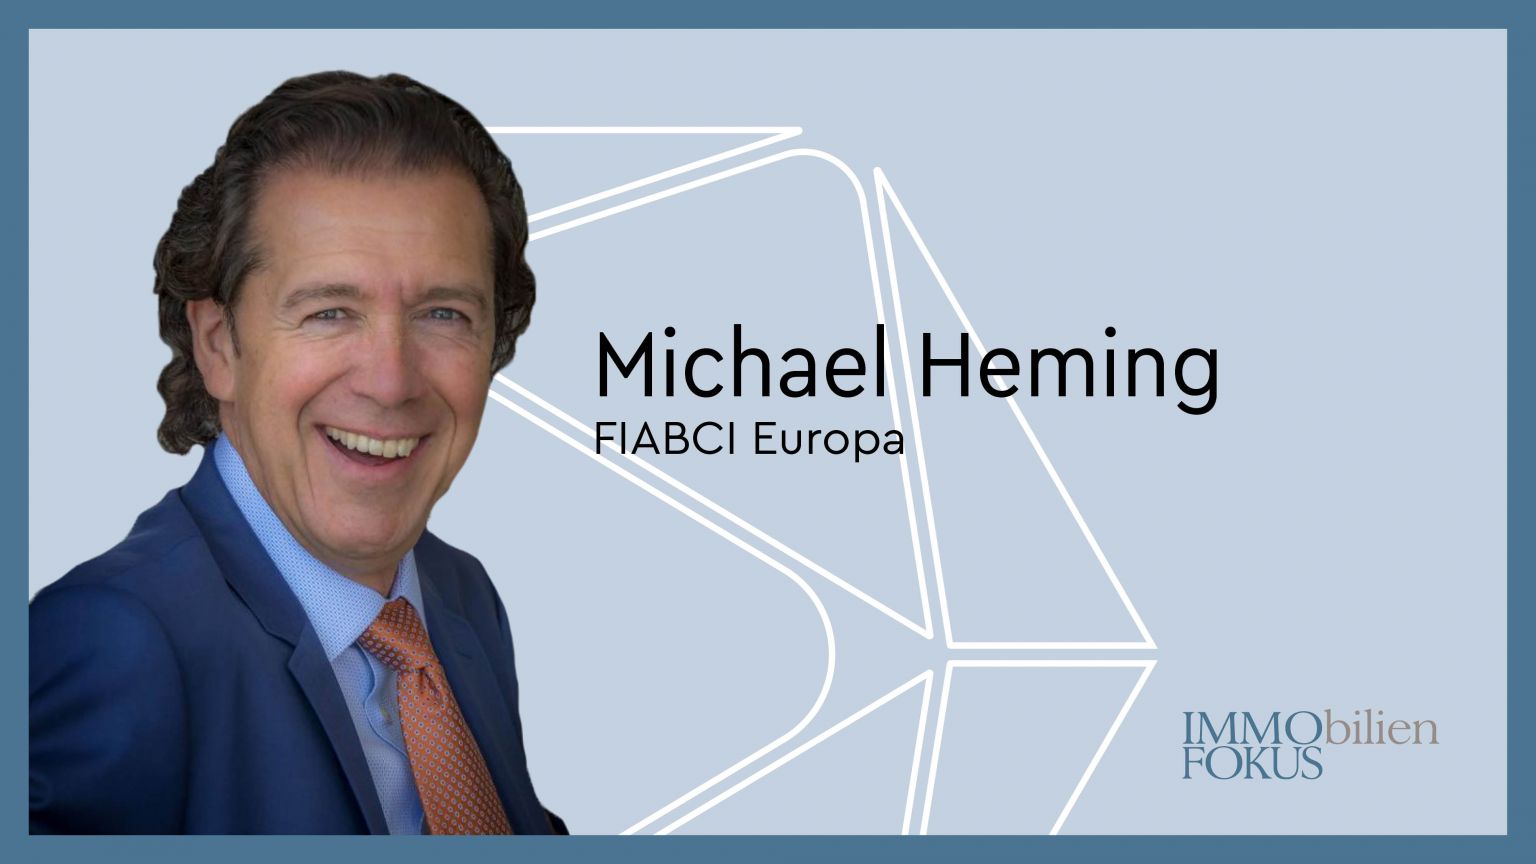 FIABCI Europa: Zweite Amtszeit von Michael Heming beginnt